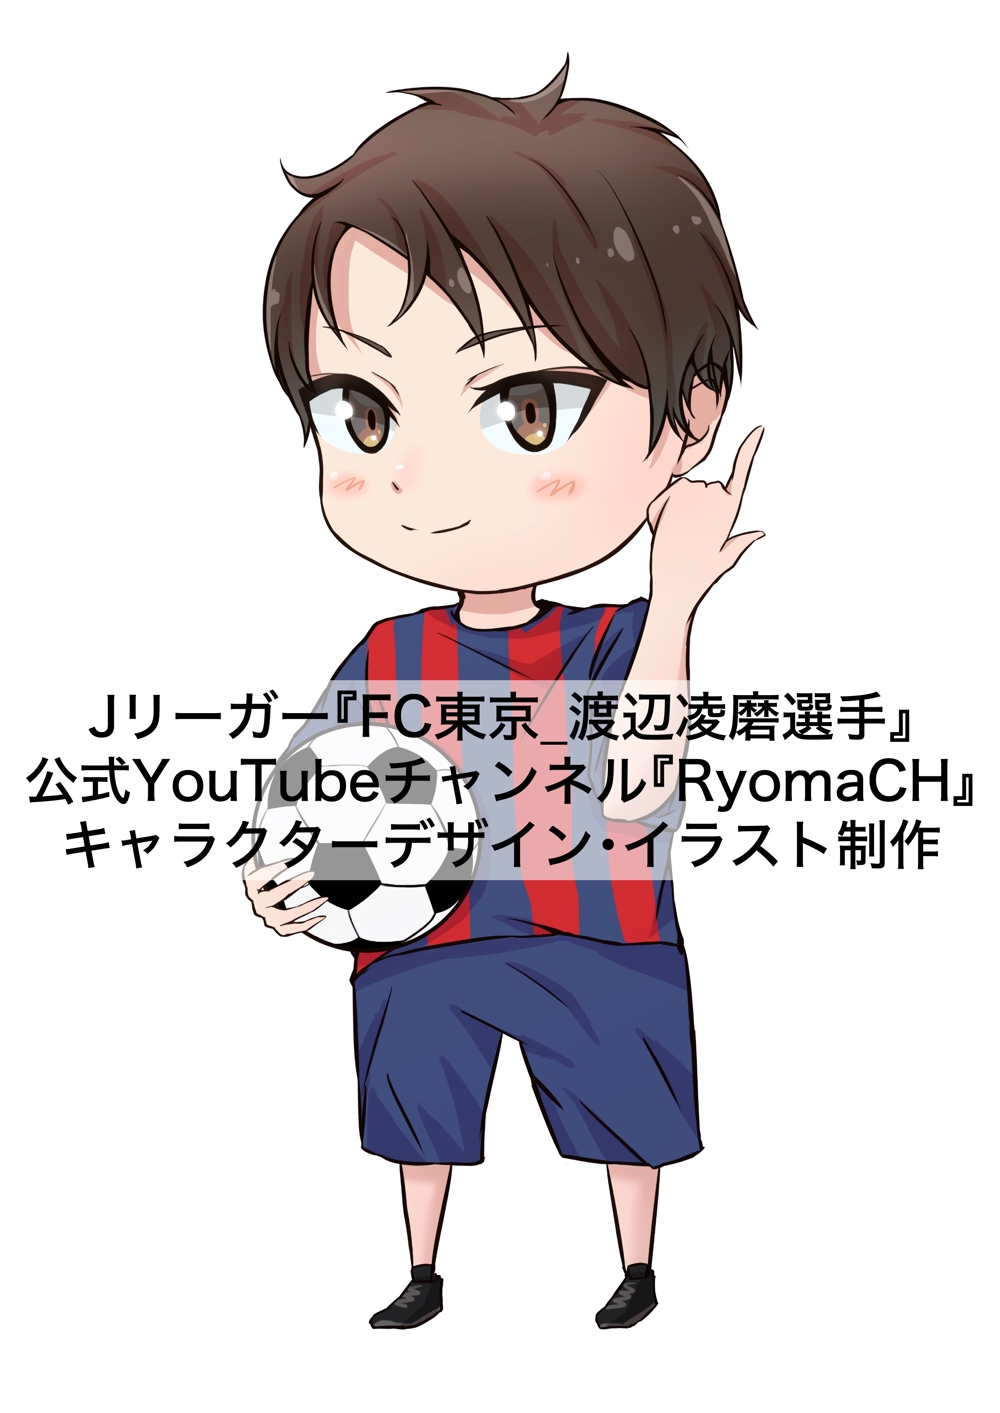 Jリーガー『FC東京_渡辺凌磨選手』のYouTubeチャンネル『RyomaCH』アイコン制作